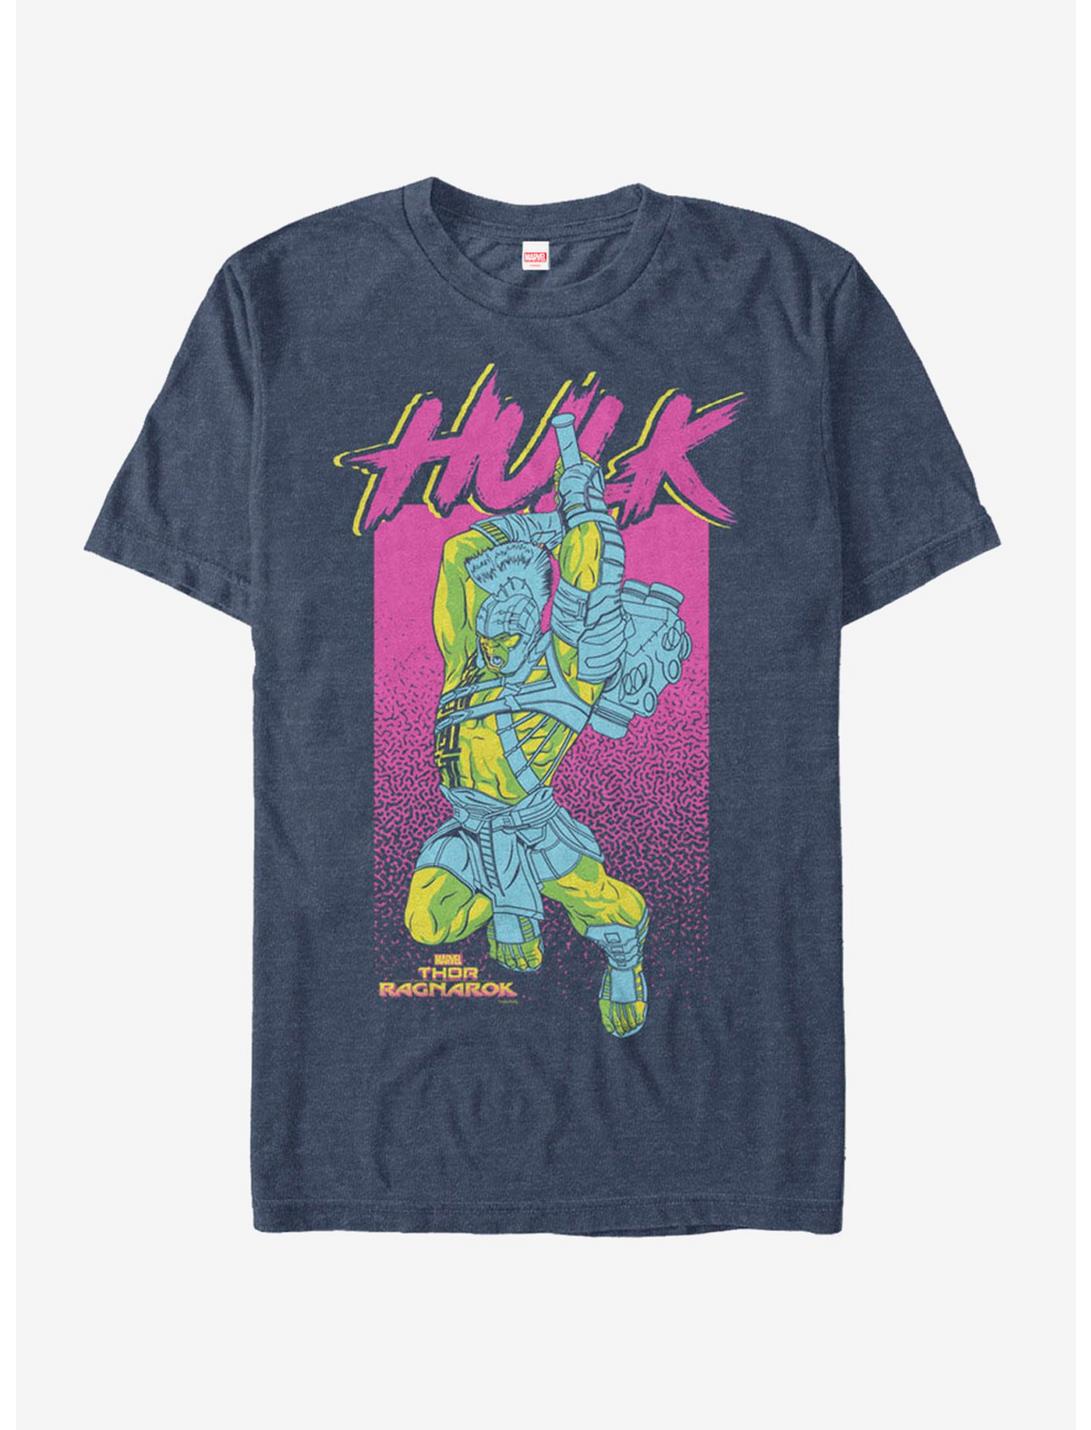 Marvel Thor: Ragnarok Hulk Smash T-Shirt, NAVY HTR, hi-res